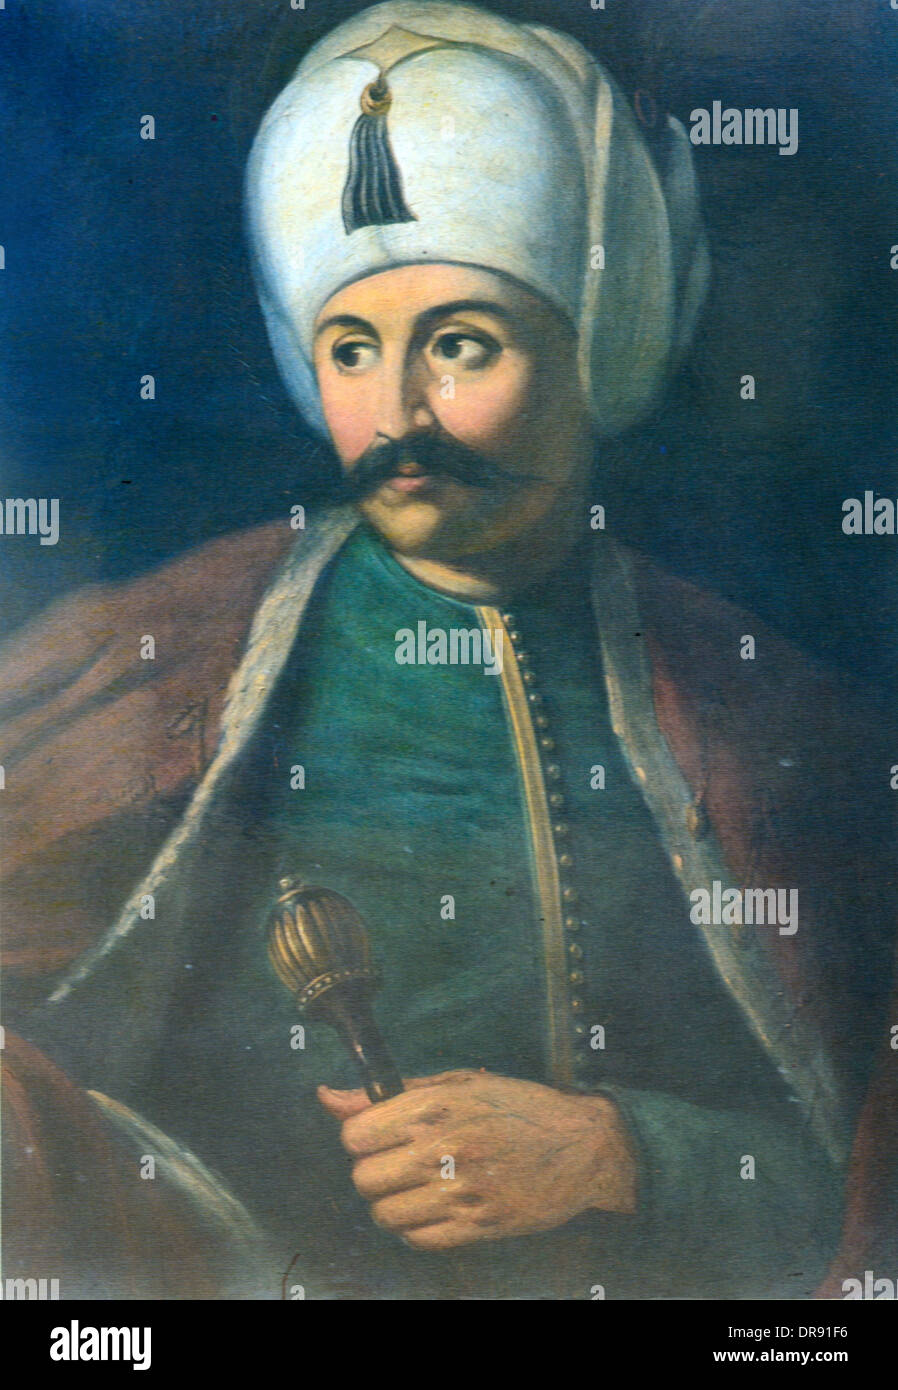 Turco ottomana Sultano Selim I (1460S-1530) ritratto Foto Stock